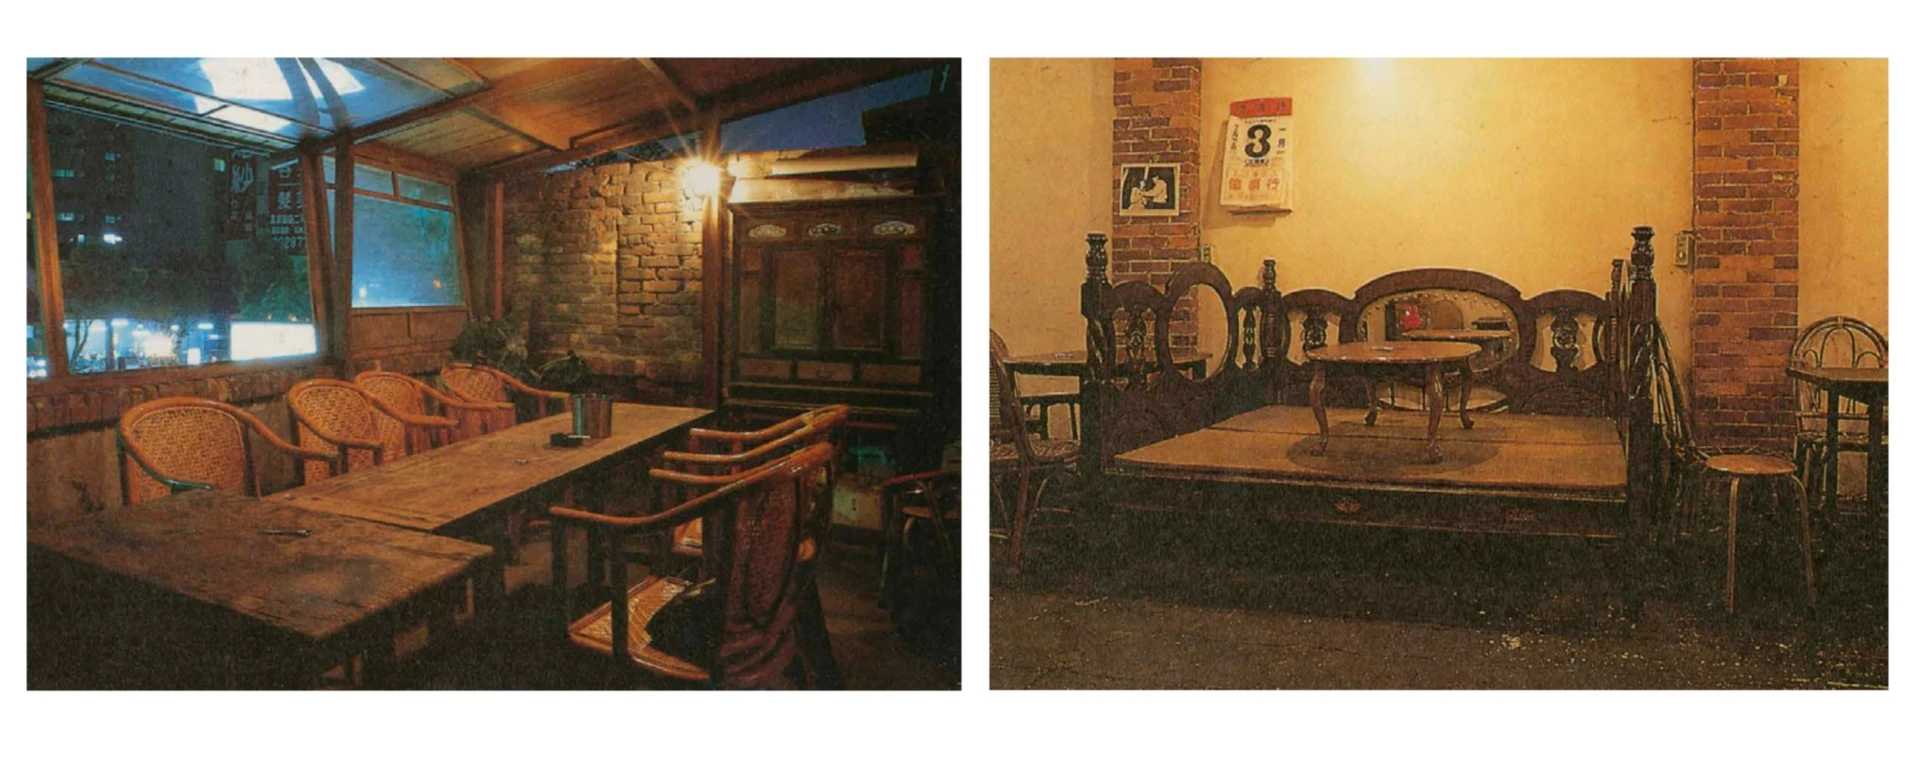 1988年開店的「攤」餐廳；攝影：空間建築攝影工作室，圖片來源：丁榮生文，〈案例第3號攤餐廳：反設計的懷鄉角落〉，《雅砌》月刊2月號，1990.02，頁83−84；吳光庭提供-圖片